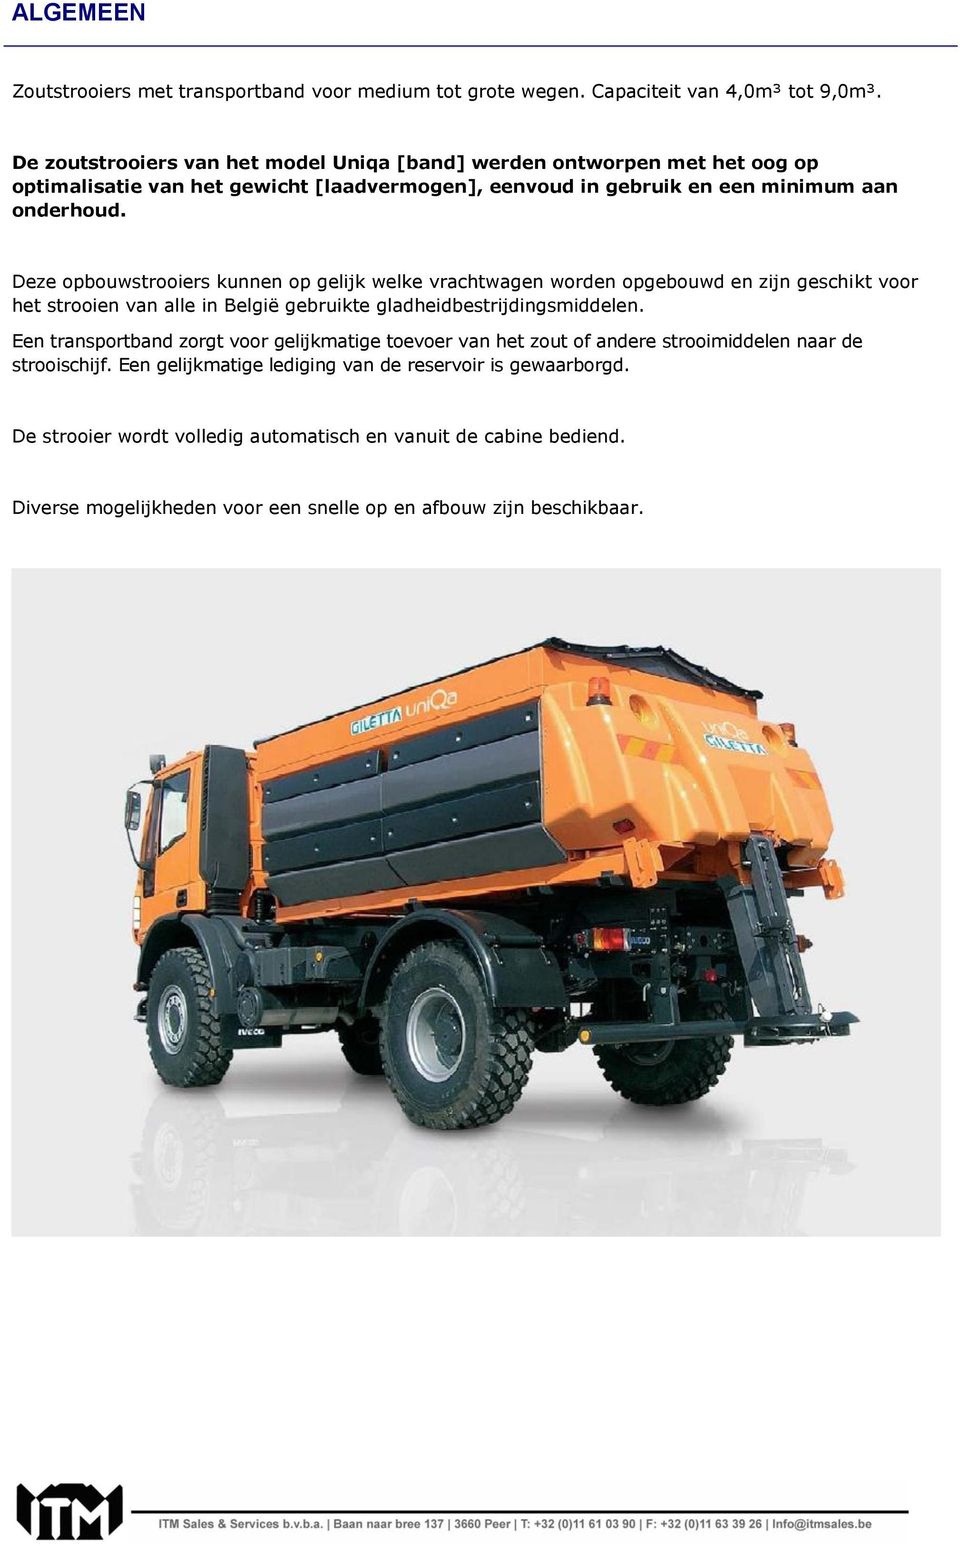 Deze opbouwstrooiers kunnen op gelijk welke vrachtwagen worden opgebouwd en zijn geschikt voor het strooien van alle in België gebruikte gladheidbestrijdingsmiddelen.